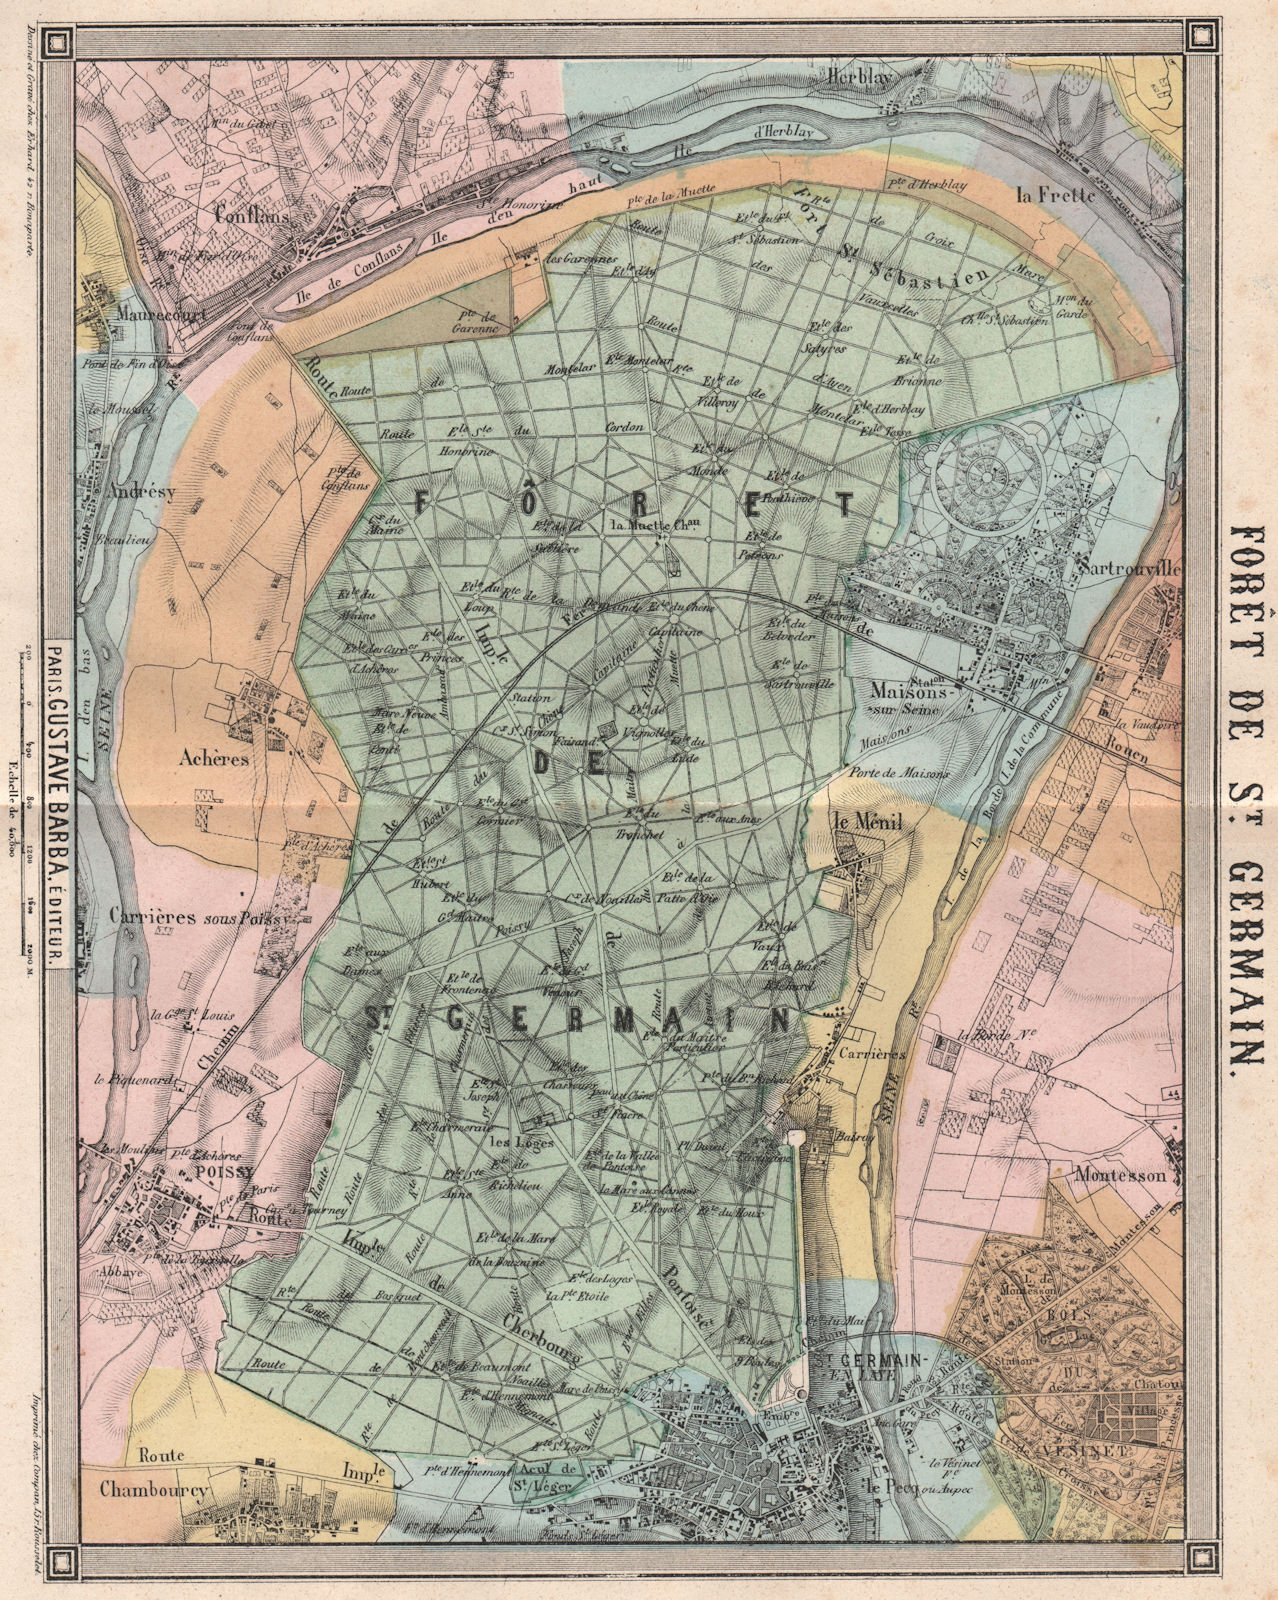 FORÊT DE ST. GERMAIN-EN-LAYE. Poissy Maisons-Laffitte Mezzenile-le-Roi 1860 map